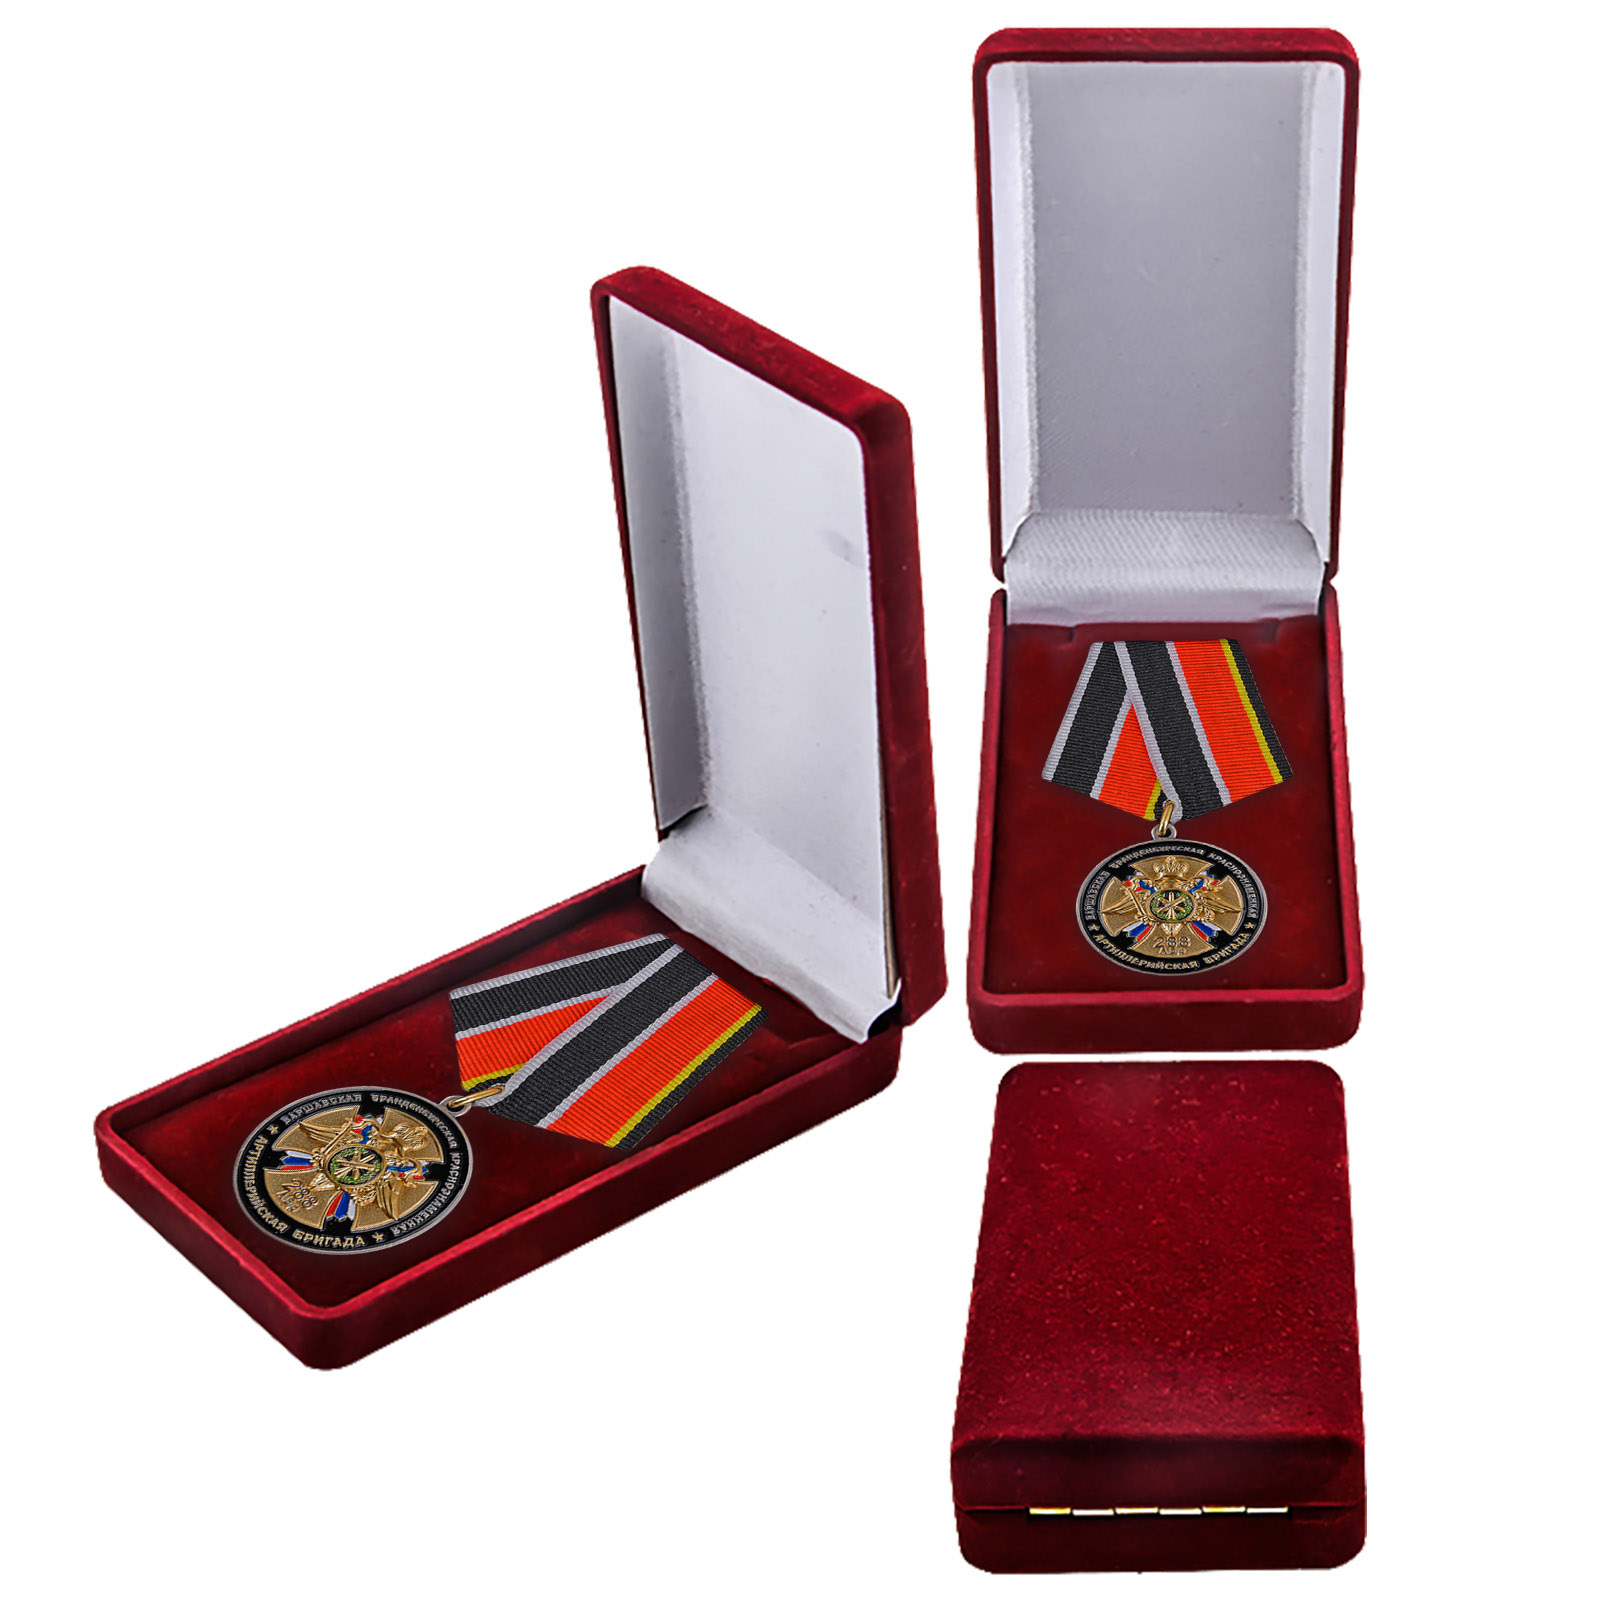 Купить памятную медаль 75 лет 288-ой Артиллерийской бригады в подарок